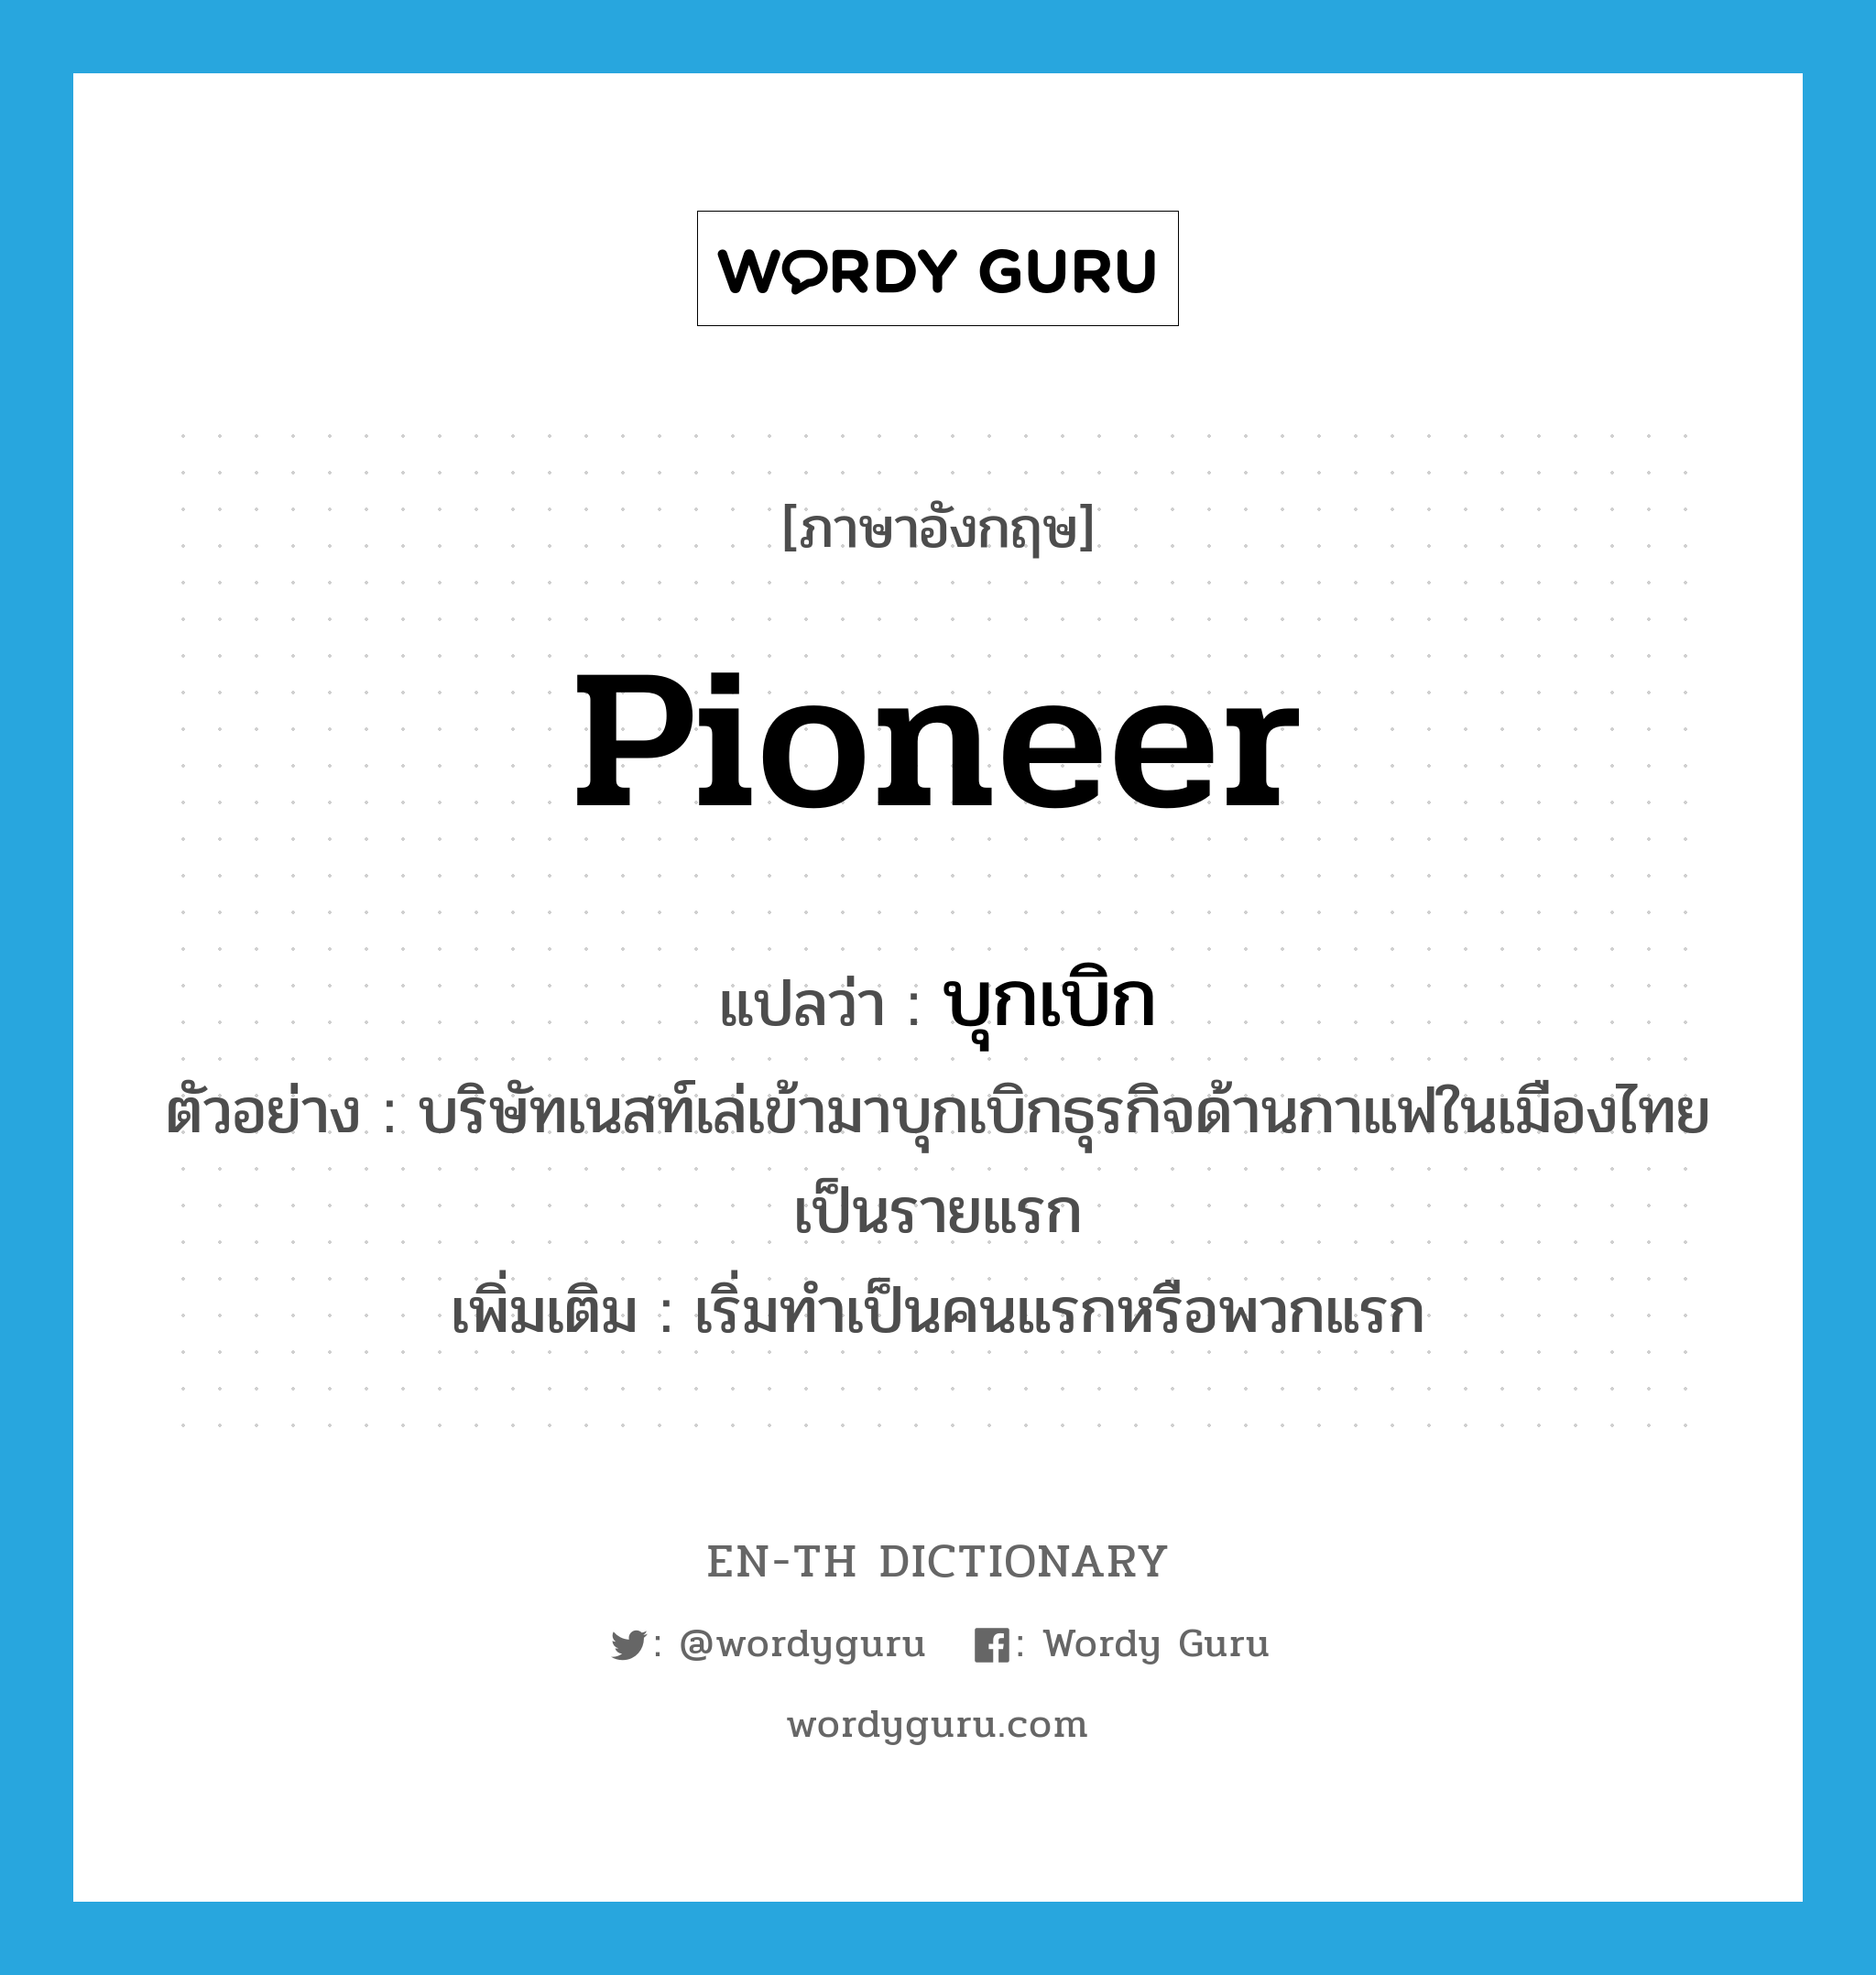 บุกเบิก ภาษาอังกฤษ?, คำศัพท์ภาษาอังกฤษ บุกเบิก แปลว่า pioneer ประเภท V ตัวอย่าง บริษัทเนสท์เล่เข้ามาบุกเบิกธุรกิจด้านกาแฟในเมืองไทยเป็นรายแรก เพิ่มเติม เริ่มทำเป็นคนแรกหรือพวกแรก หมวด V